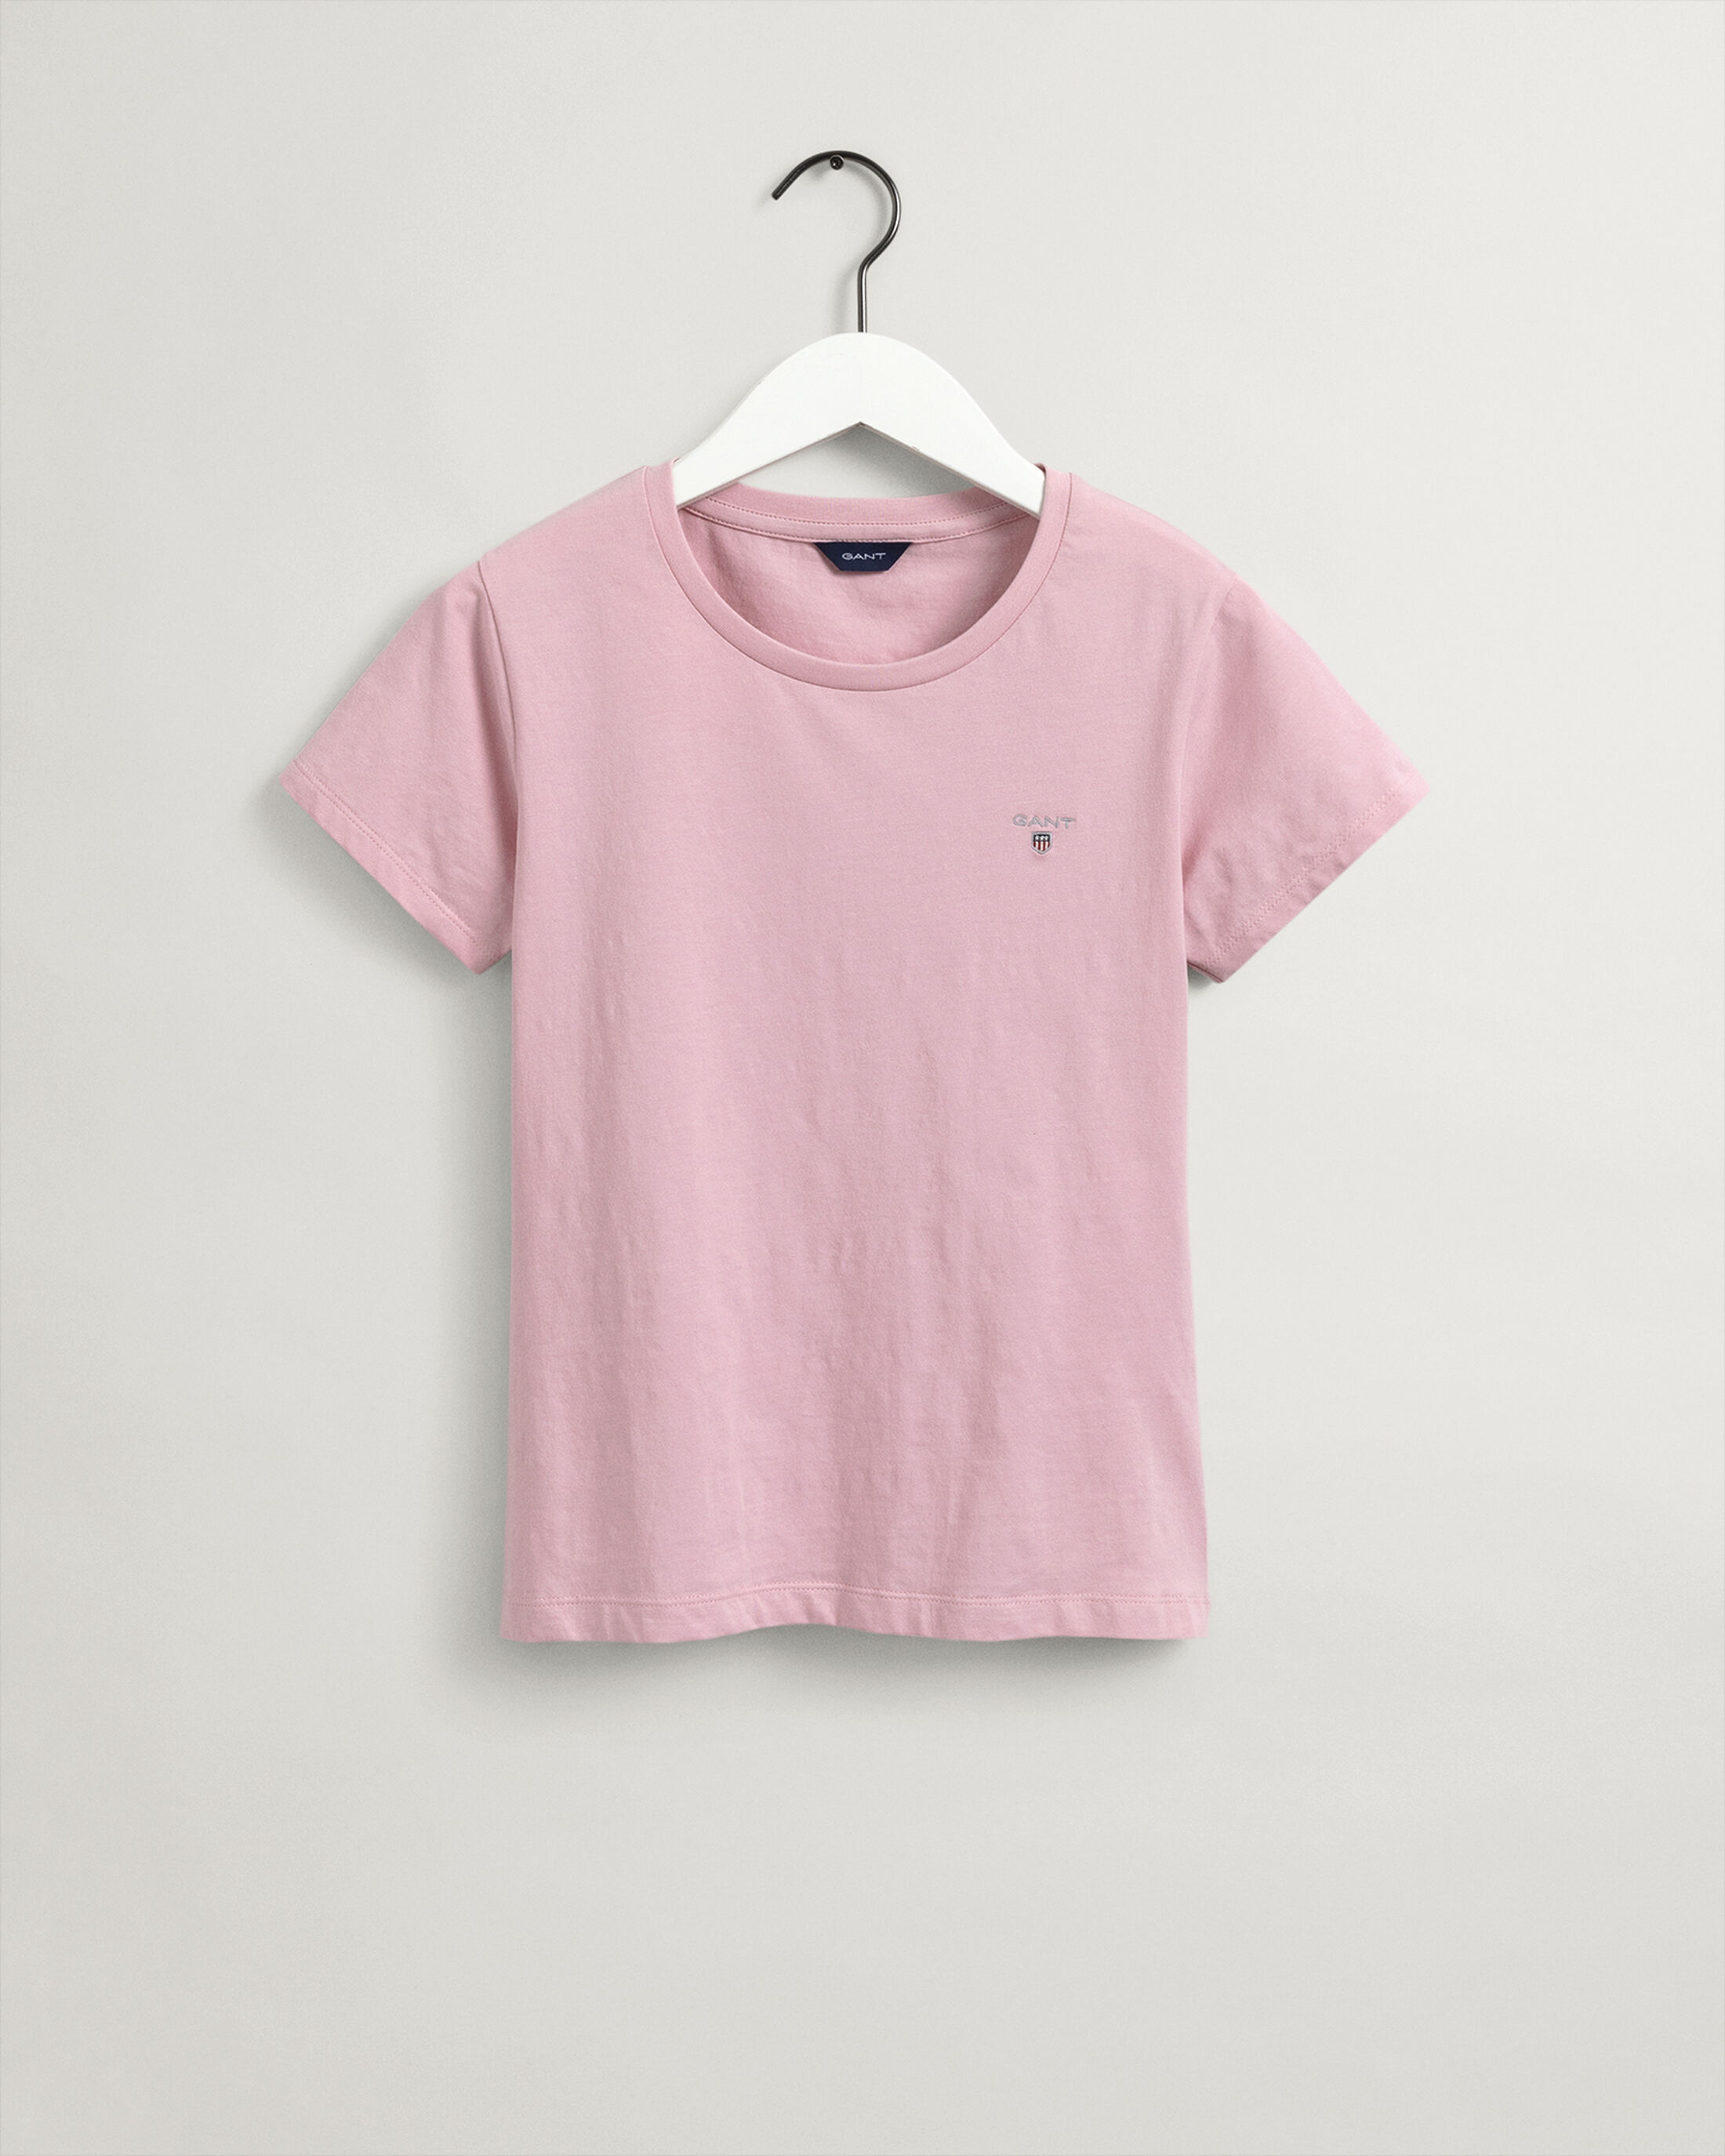  Teen Girls Original Fitted T-shirt 